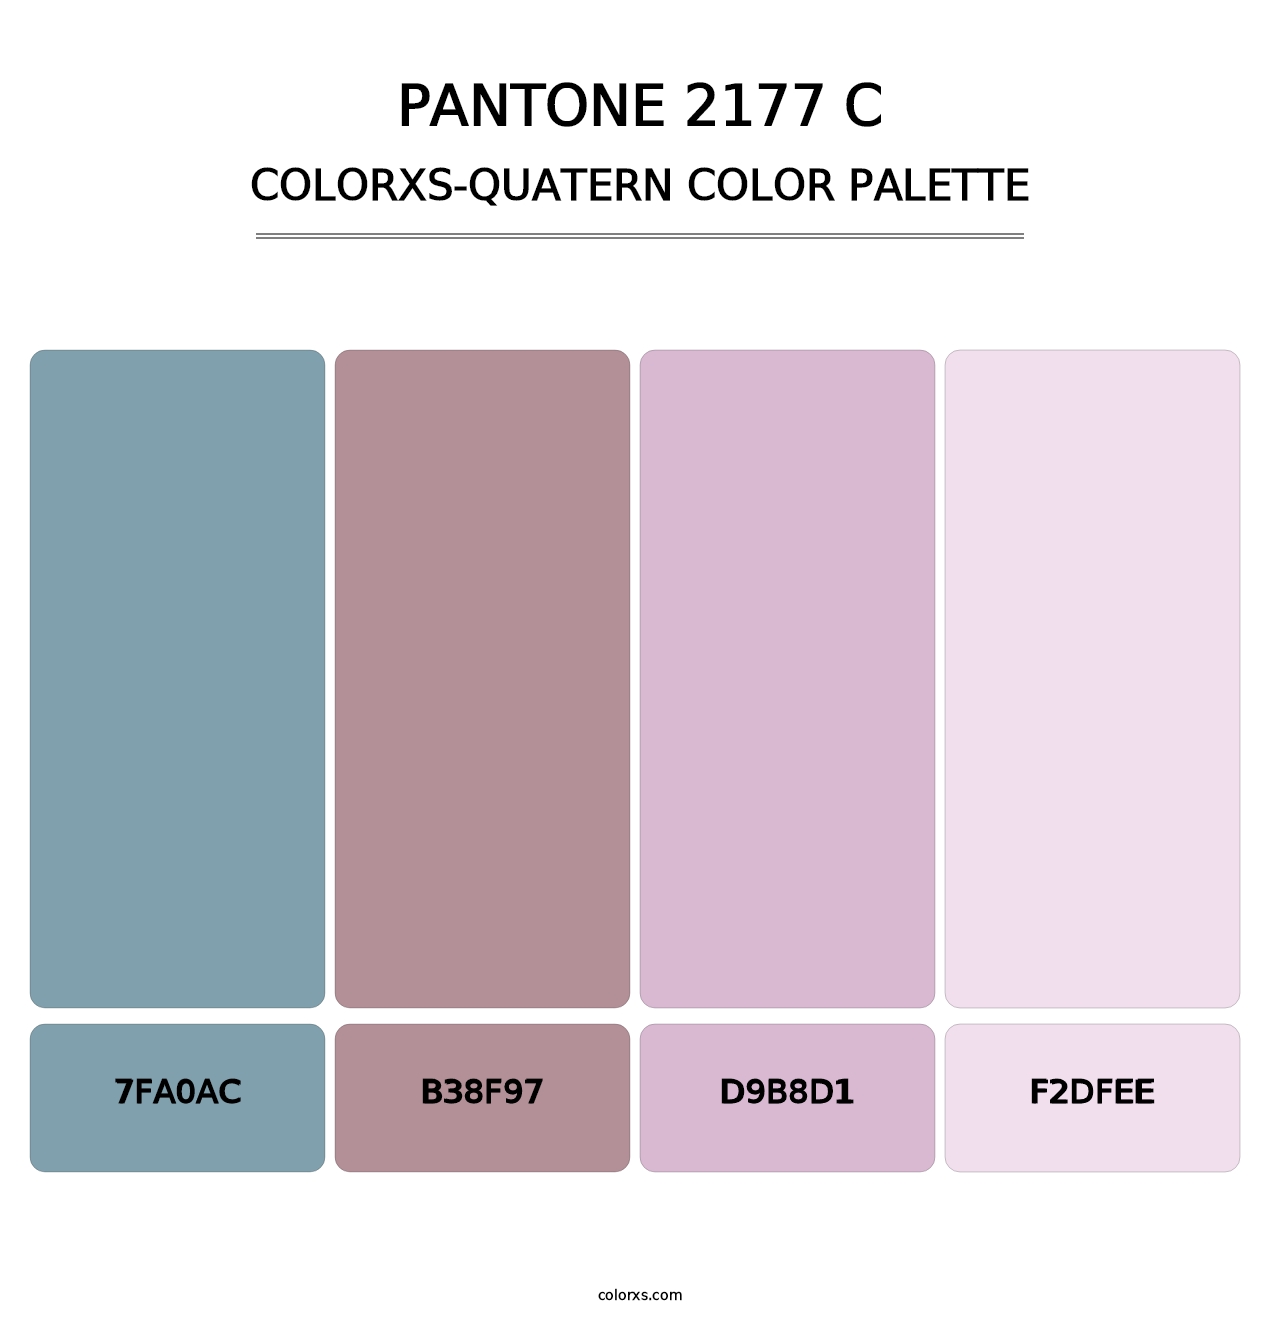 PANTONE 2177 C - Colorxs Quatern Palette